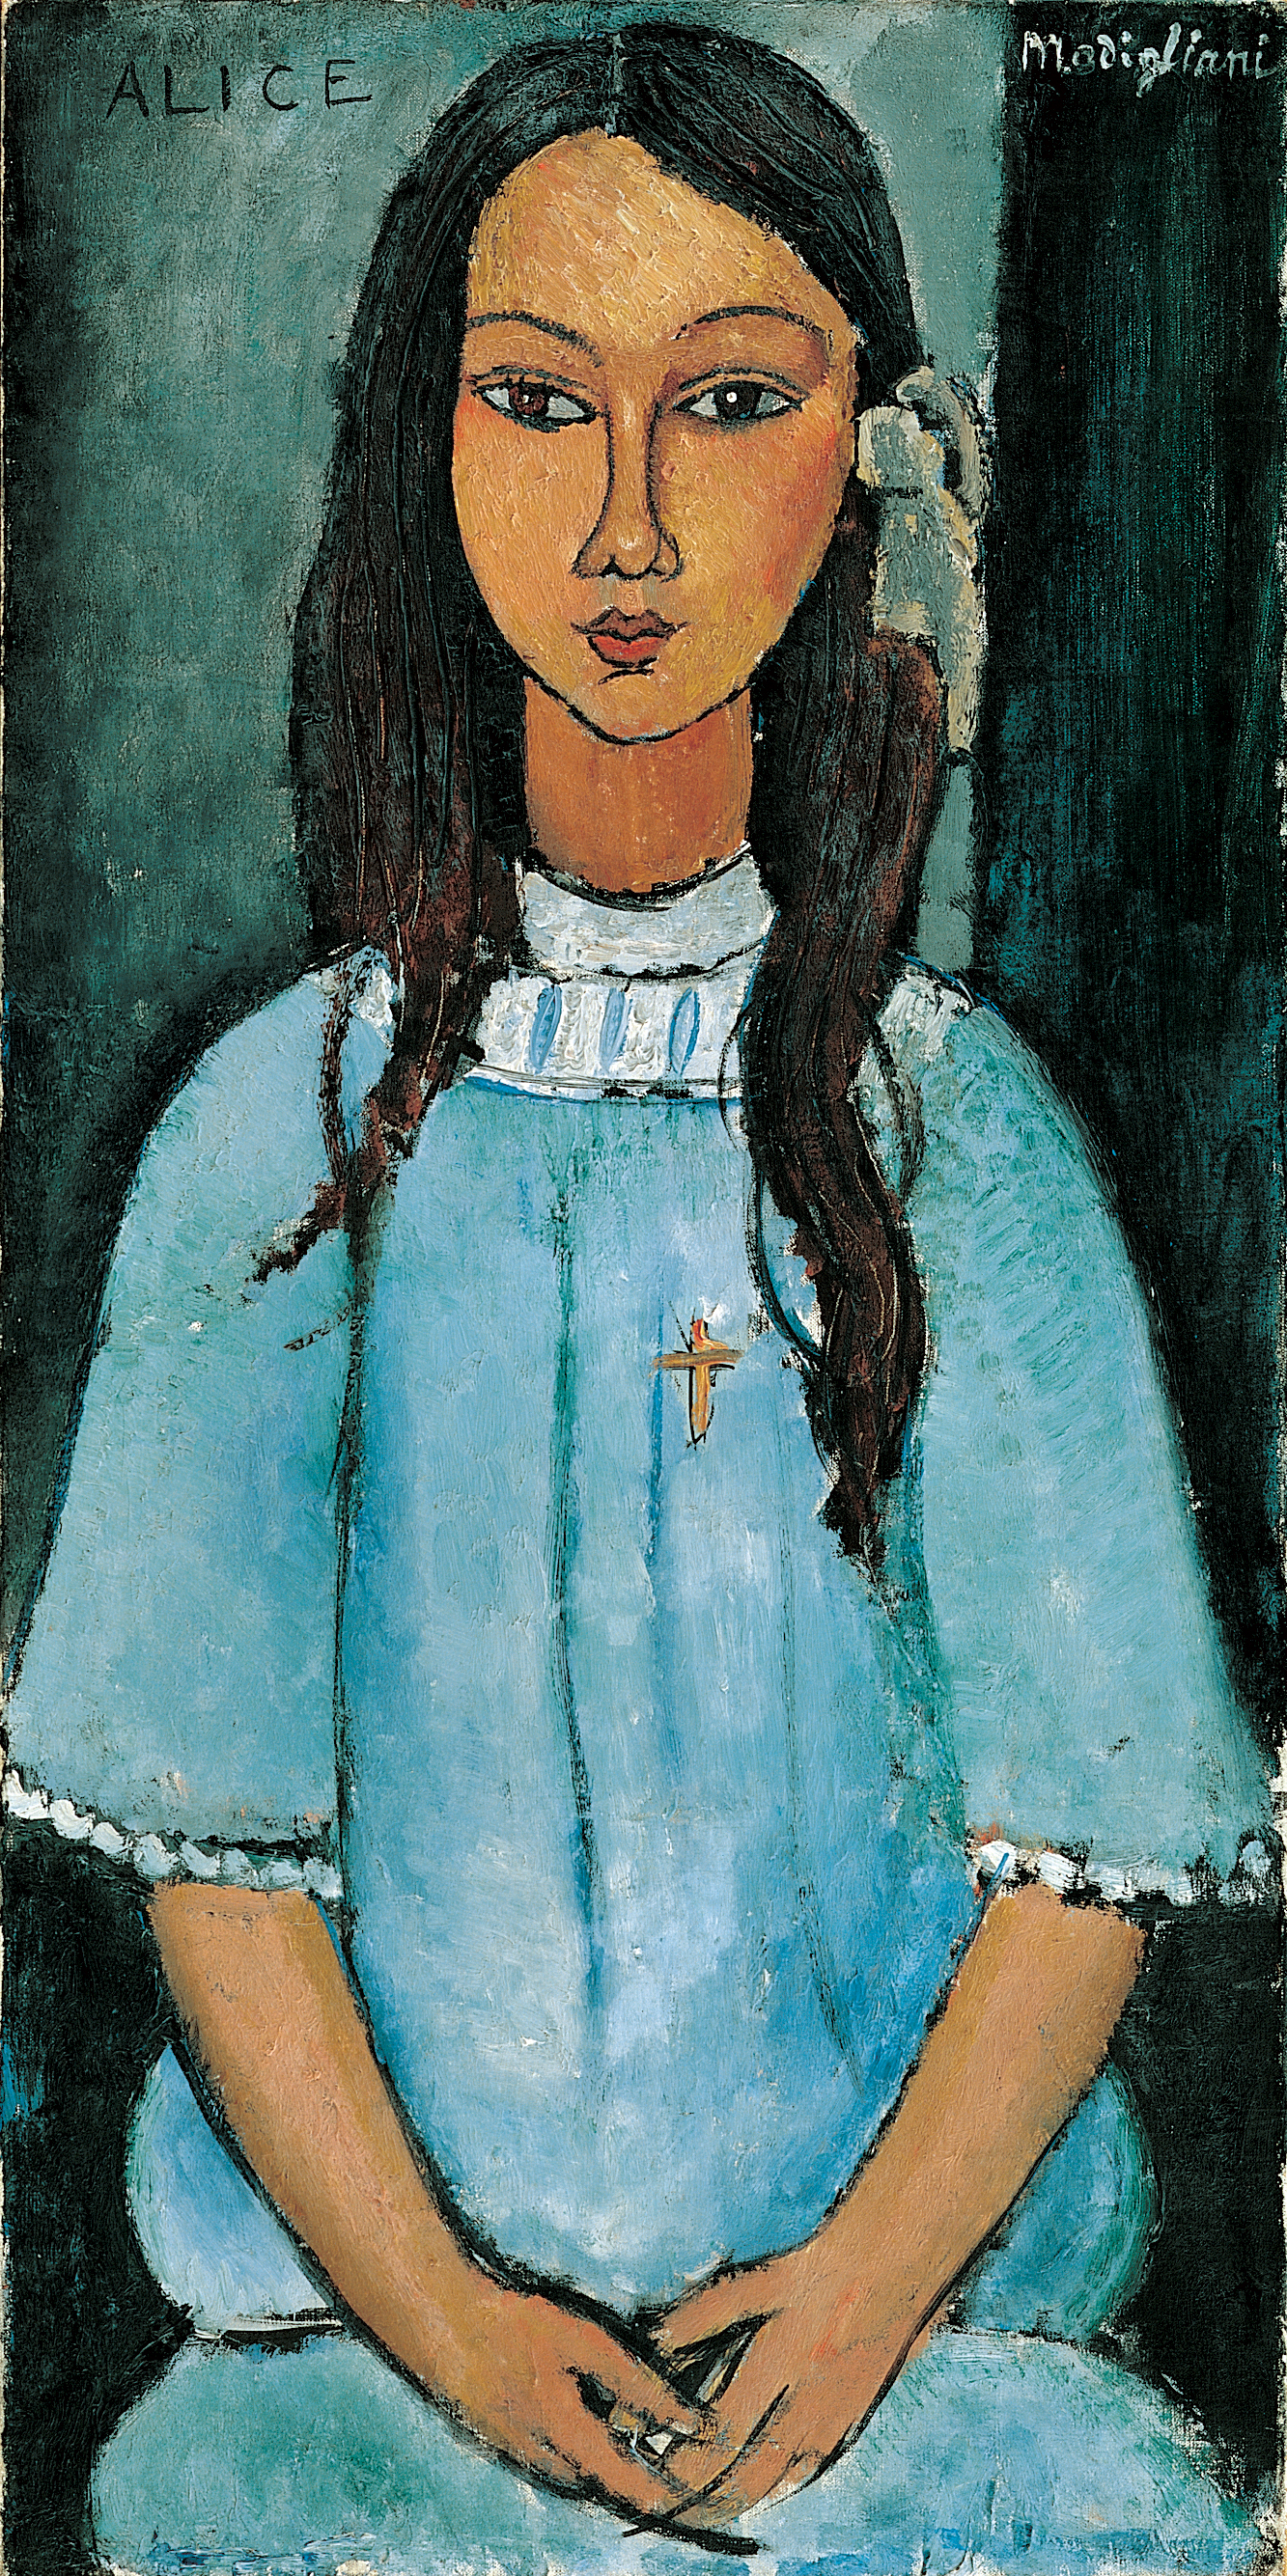 愛麗絲 by Amedeo Modigliani - 1918 - 39 x 78.5 cm 